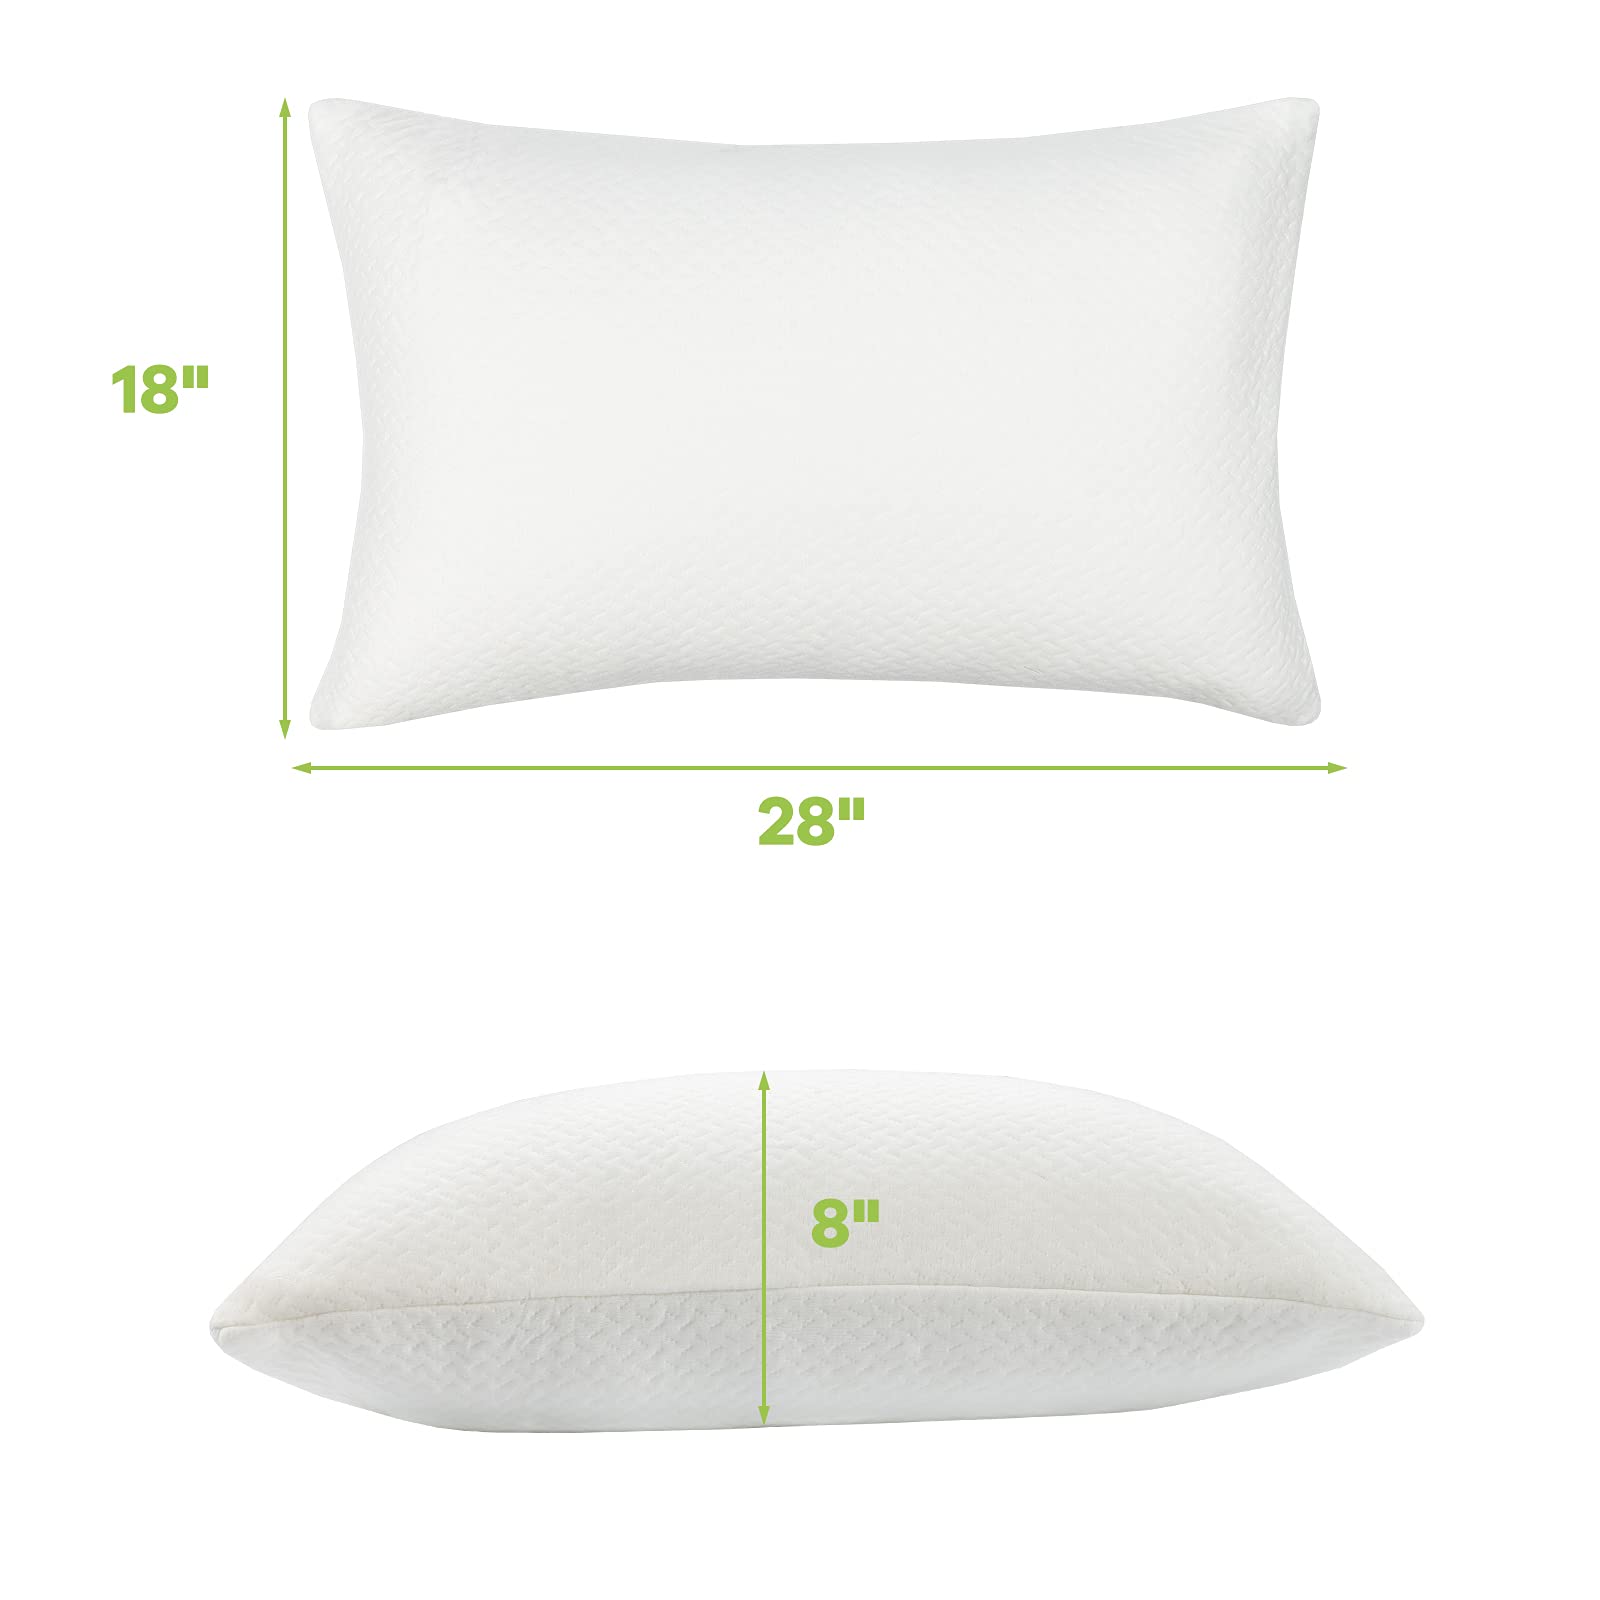 Giantex 2 Pack Shredded Memory Foam Pillows